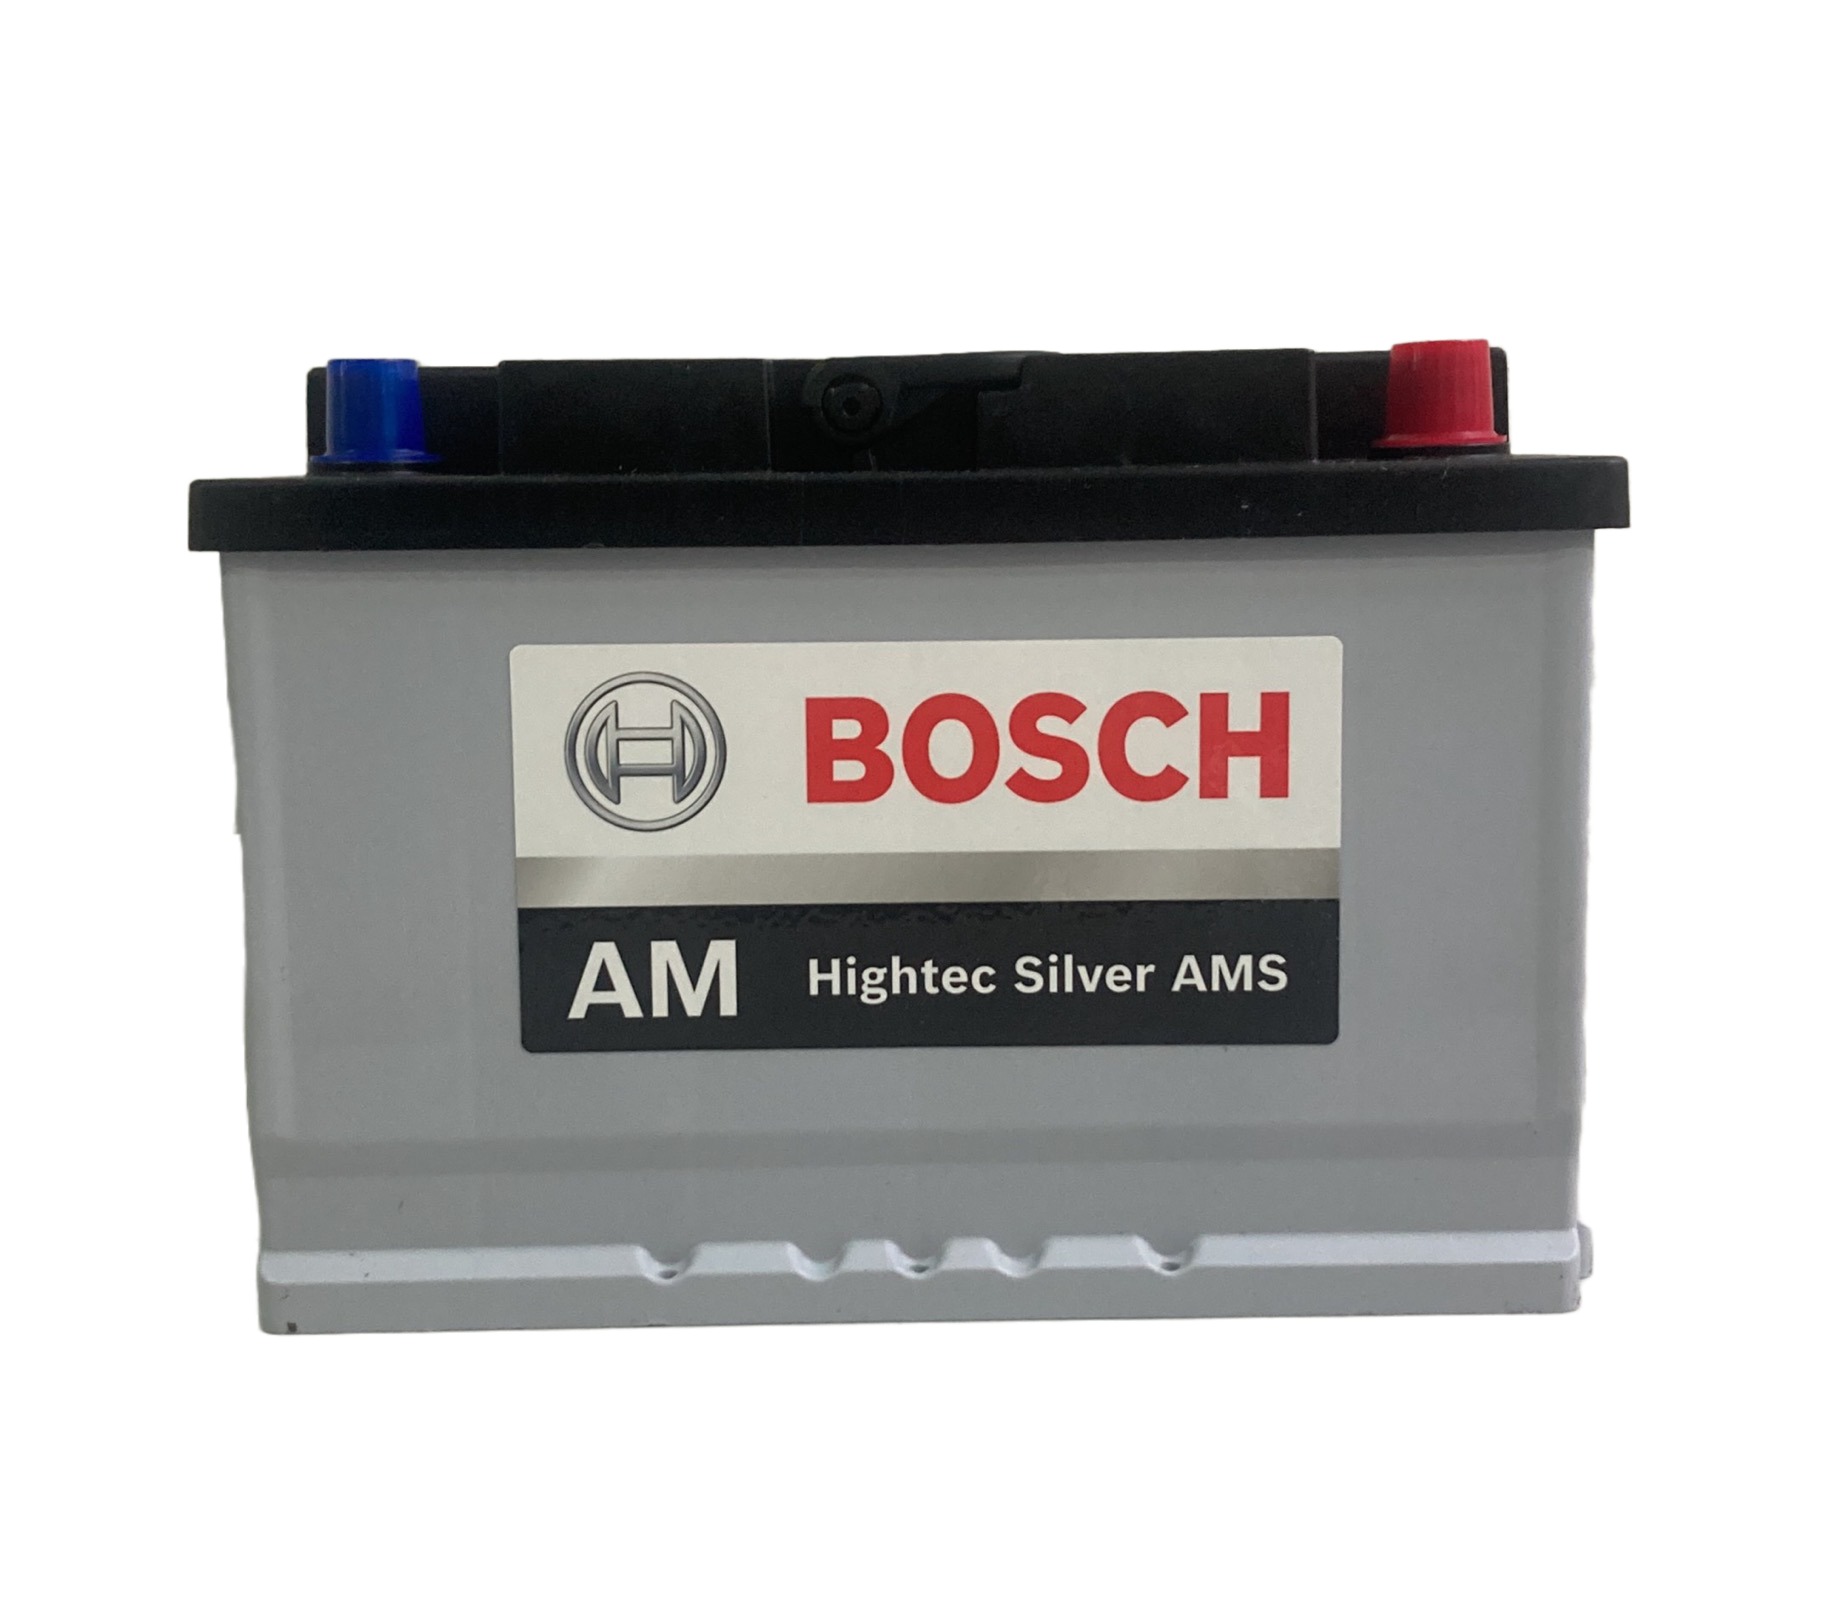 Bosch: Descubre quién fabrica las baterías de esta reconocida marca